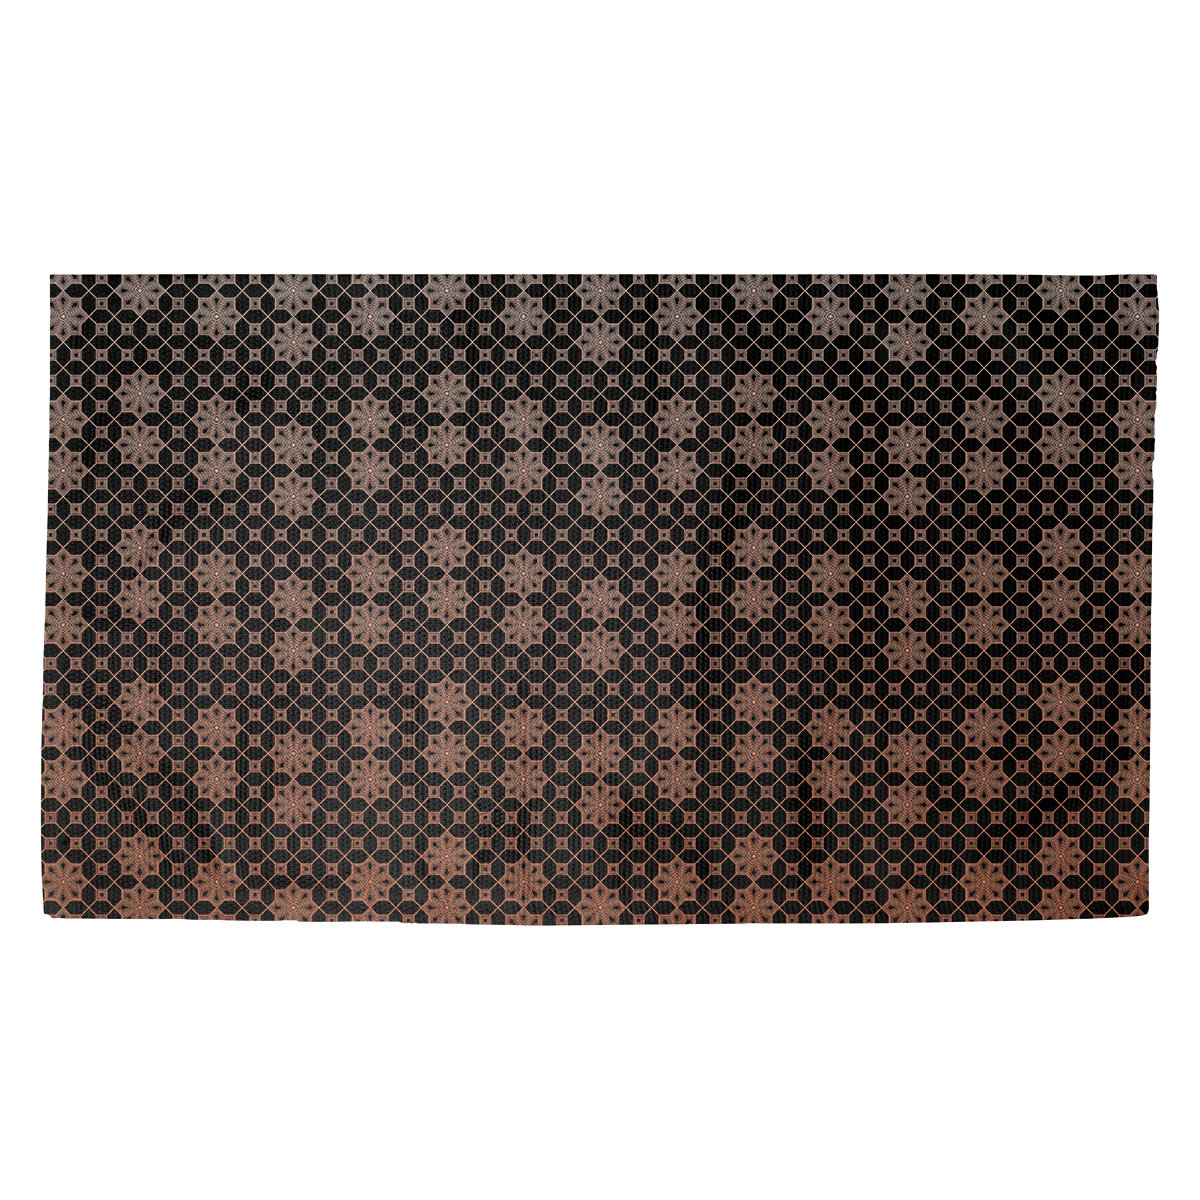 HUGS IDEA Brick Wall Pattern Doormat Indoor Kitchen Decor Rug Bathroom Door Mat Non Slip Soft Absorbsent